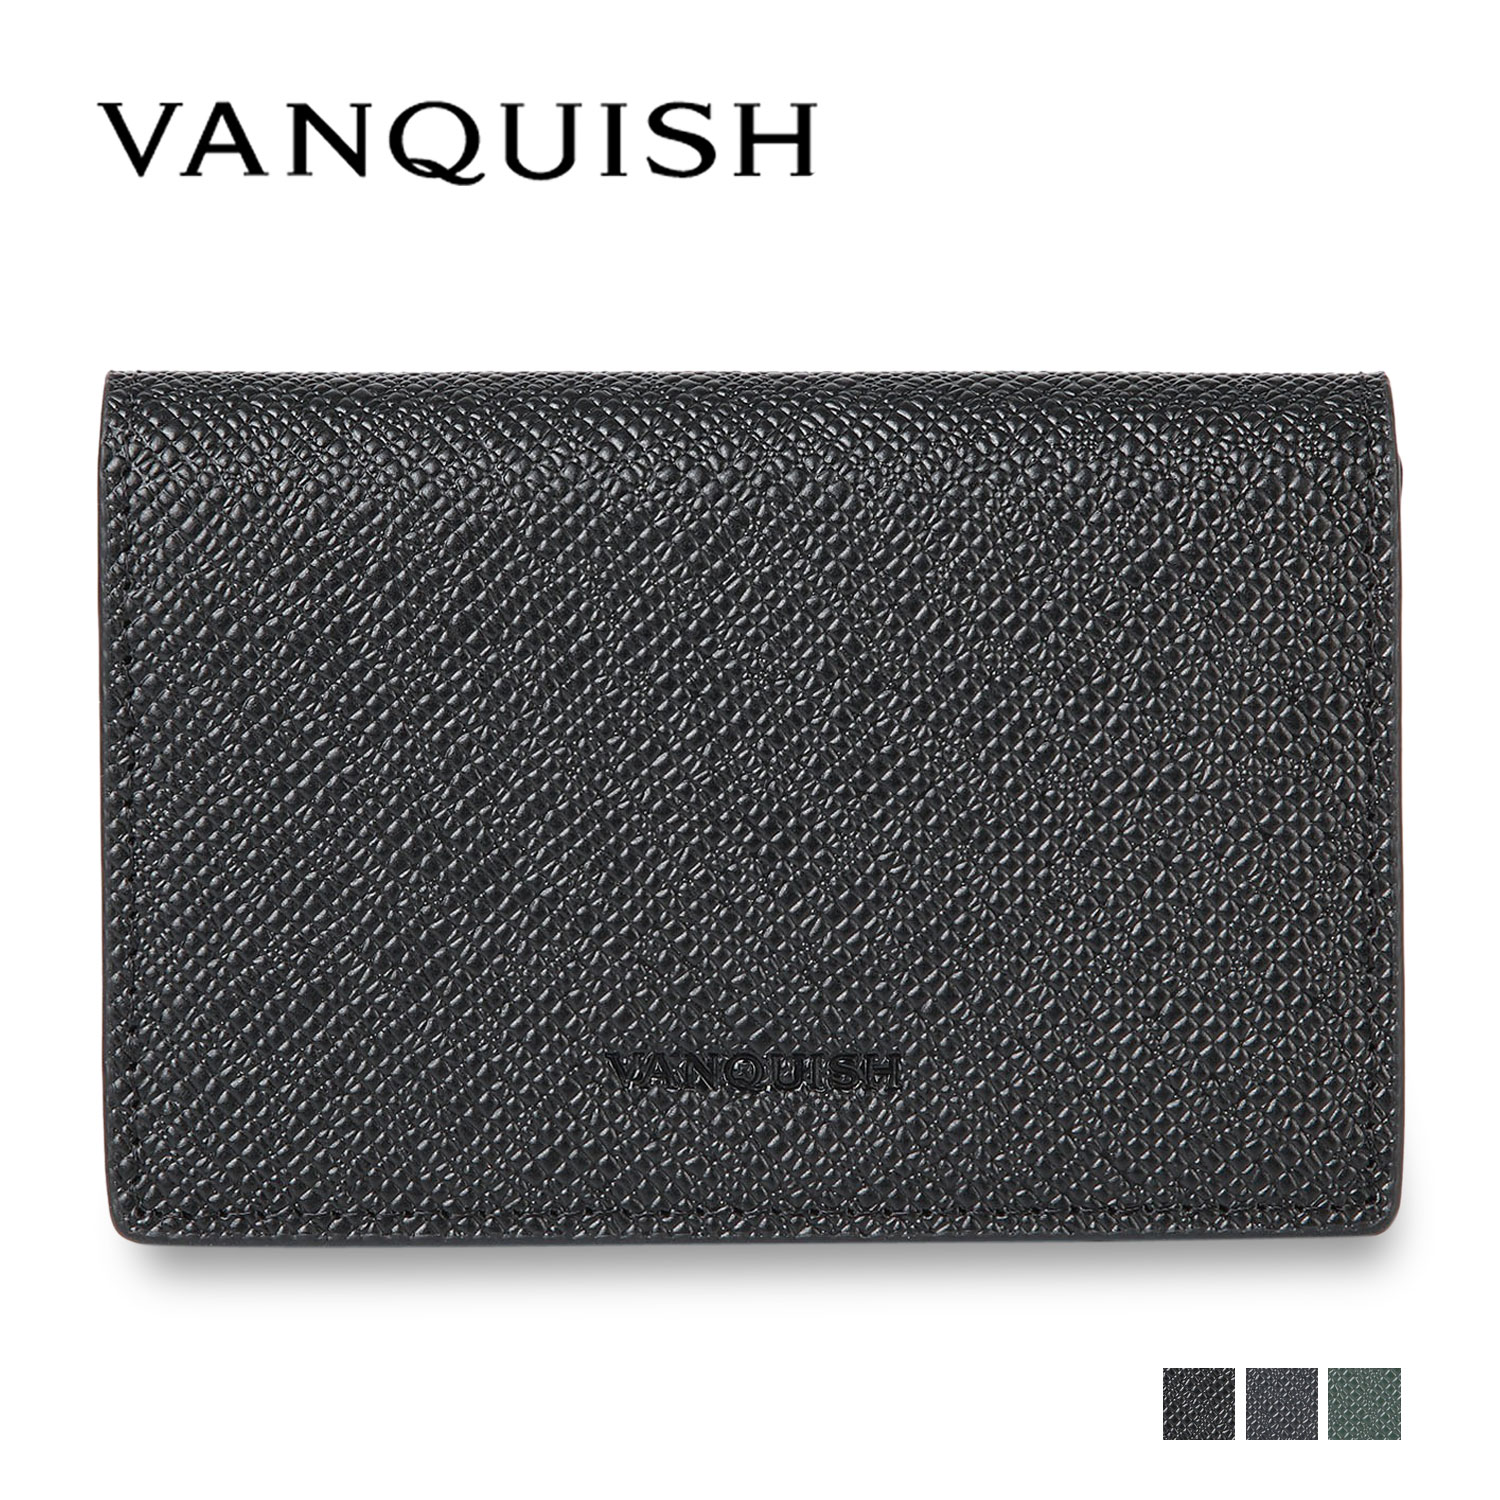 ヴァンキッシュ VANQUISH カードケース 名刺入れ 定期入れ メンズ 本革 CARD CASE ブラック ネイビー ダーク グリーン 黒 43320